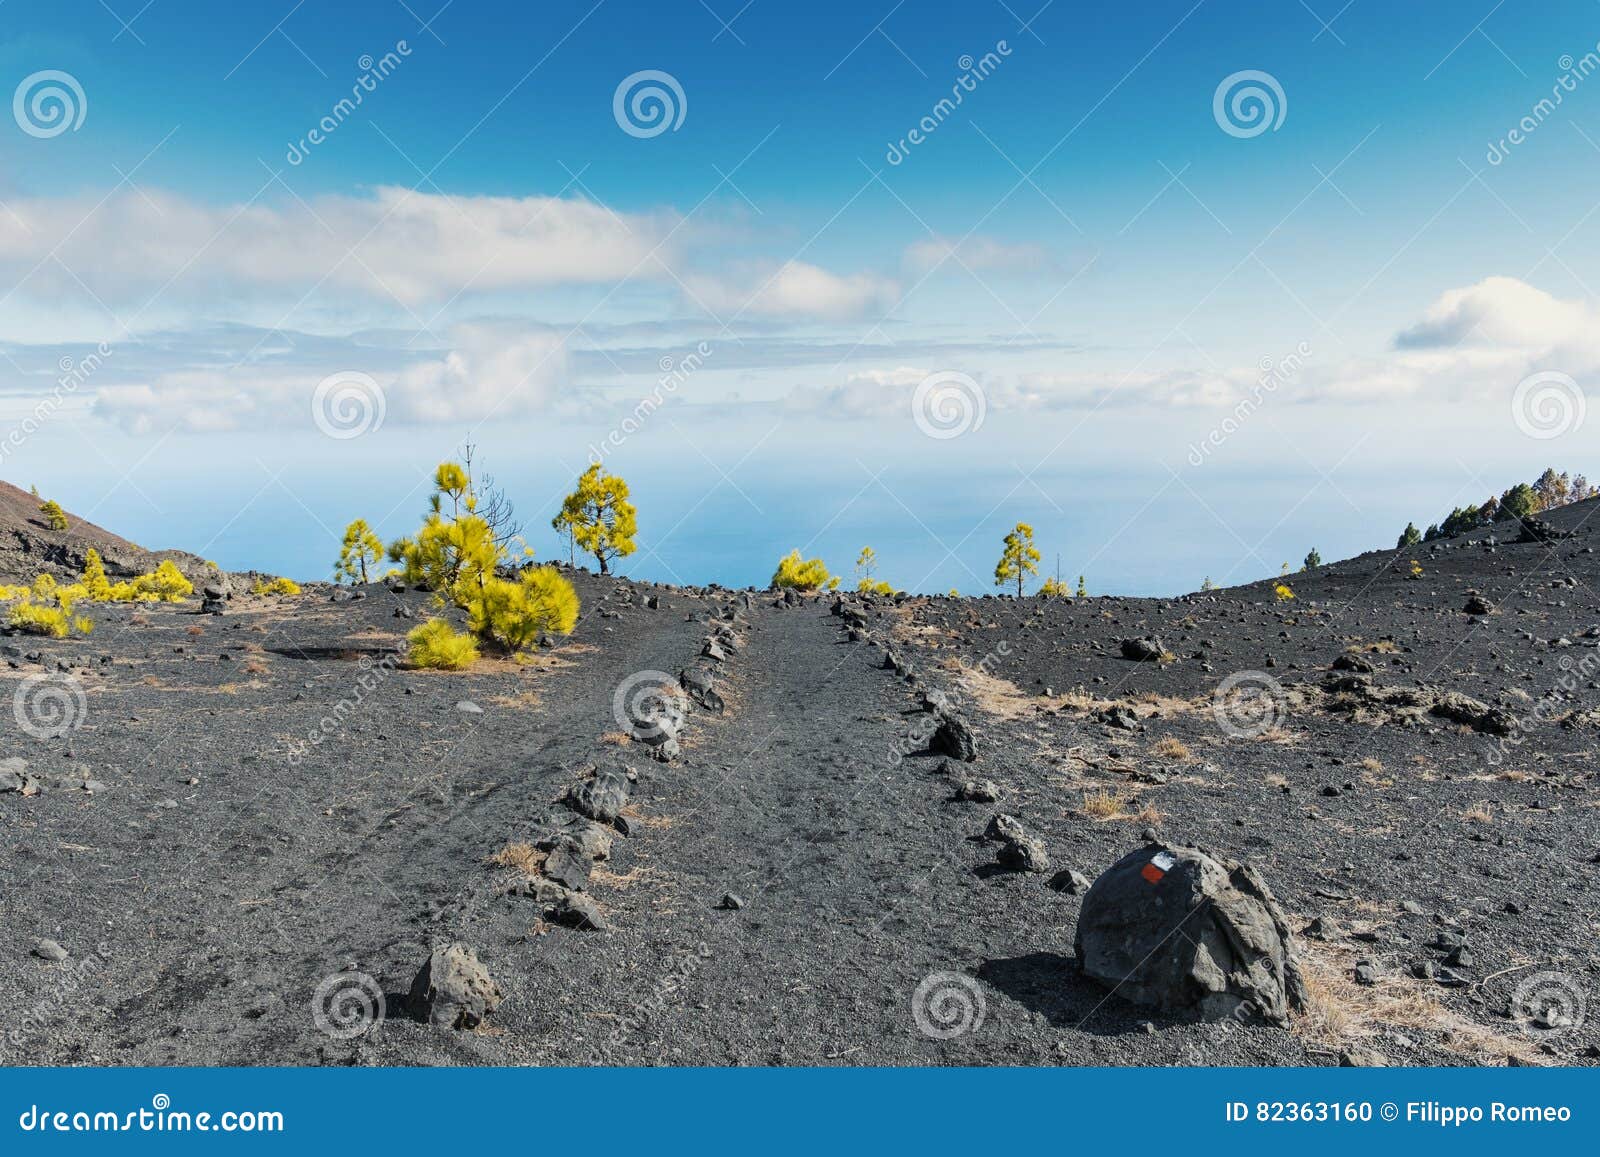 la palma ruta de los vulcanos track ocean background